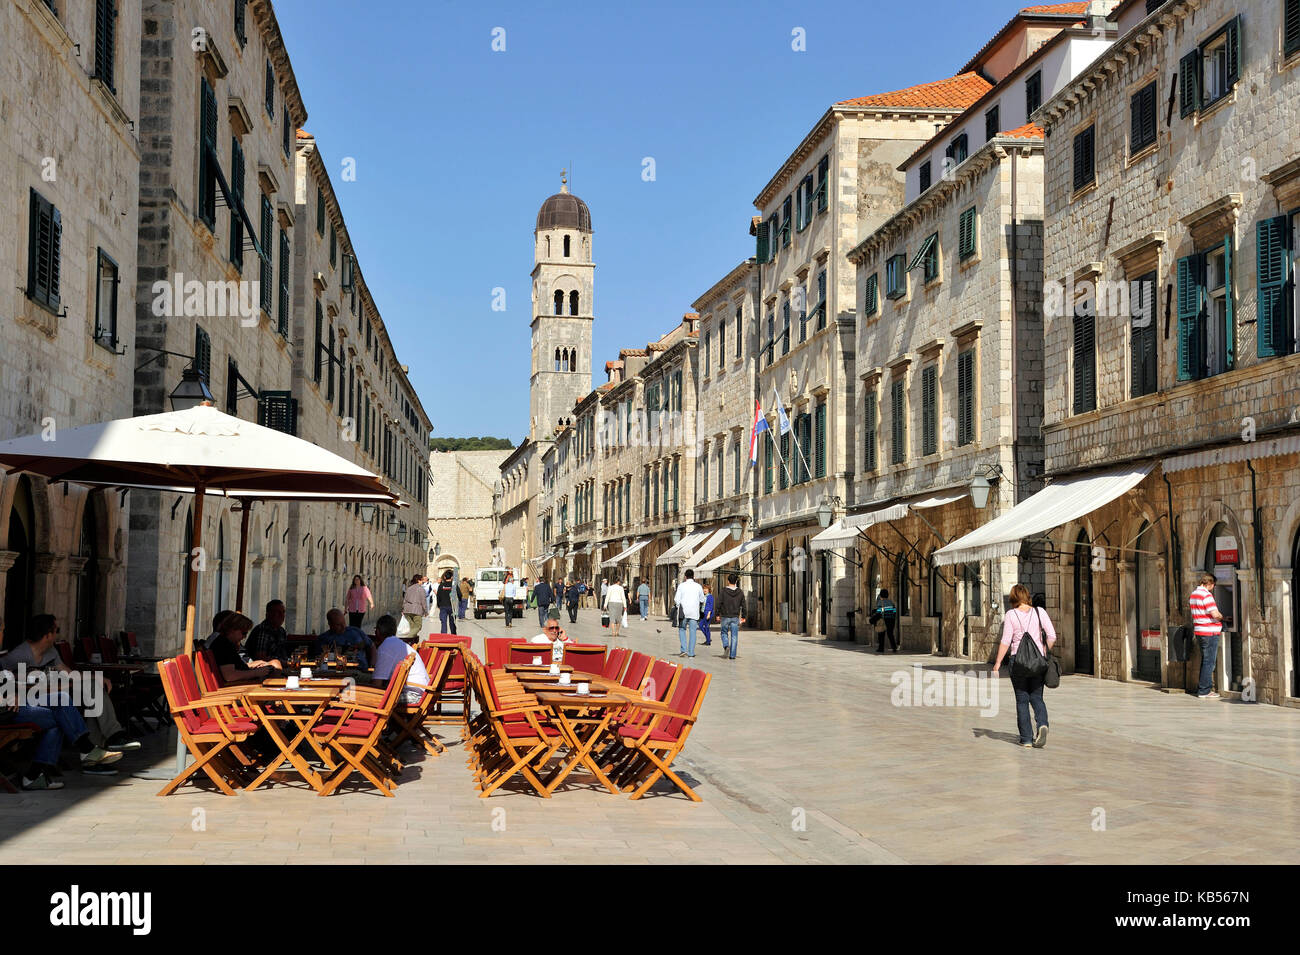 Croazia, Dalmazia, Costa dalmata, Dubrovnik, centro storico, dichiarata Patrimonio dell'Umanità dall'UNESCO, la strada principale di Placa Stradun e la chiesa del Monastero Franscicano Foto Stock